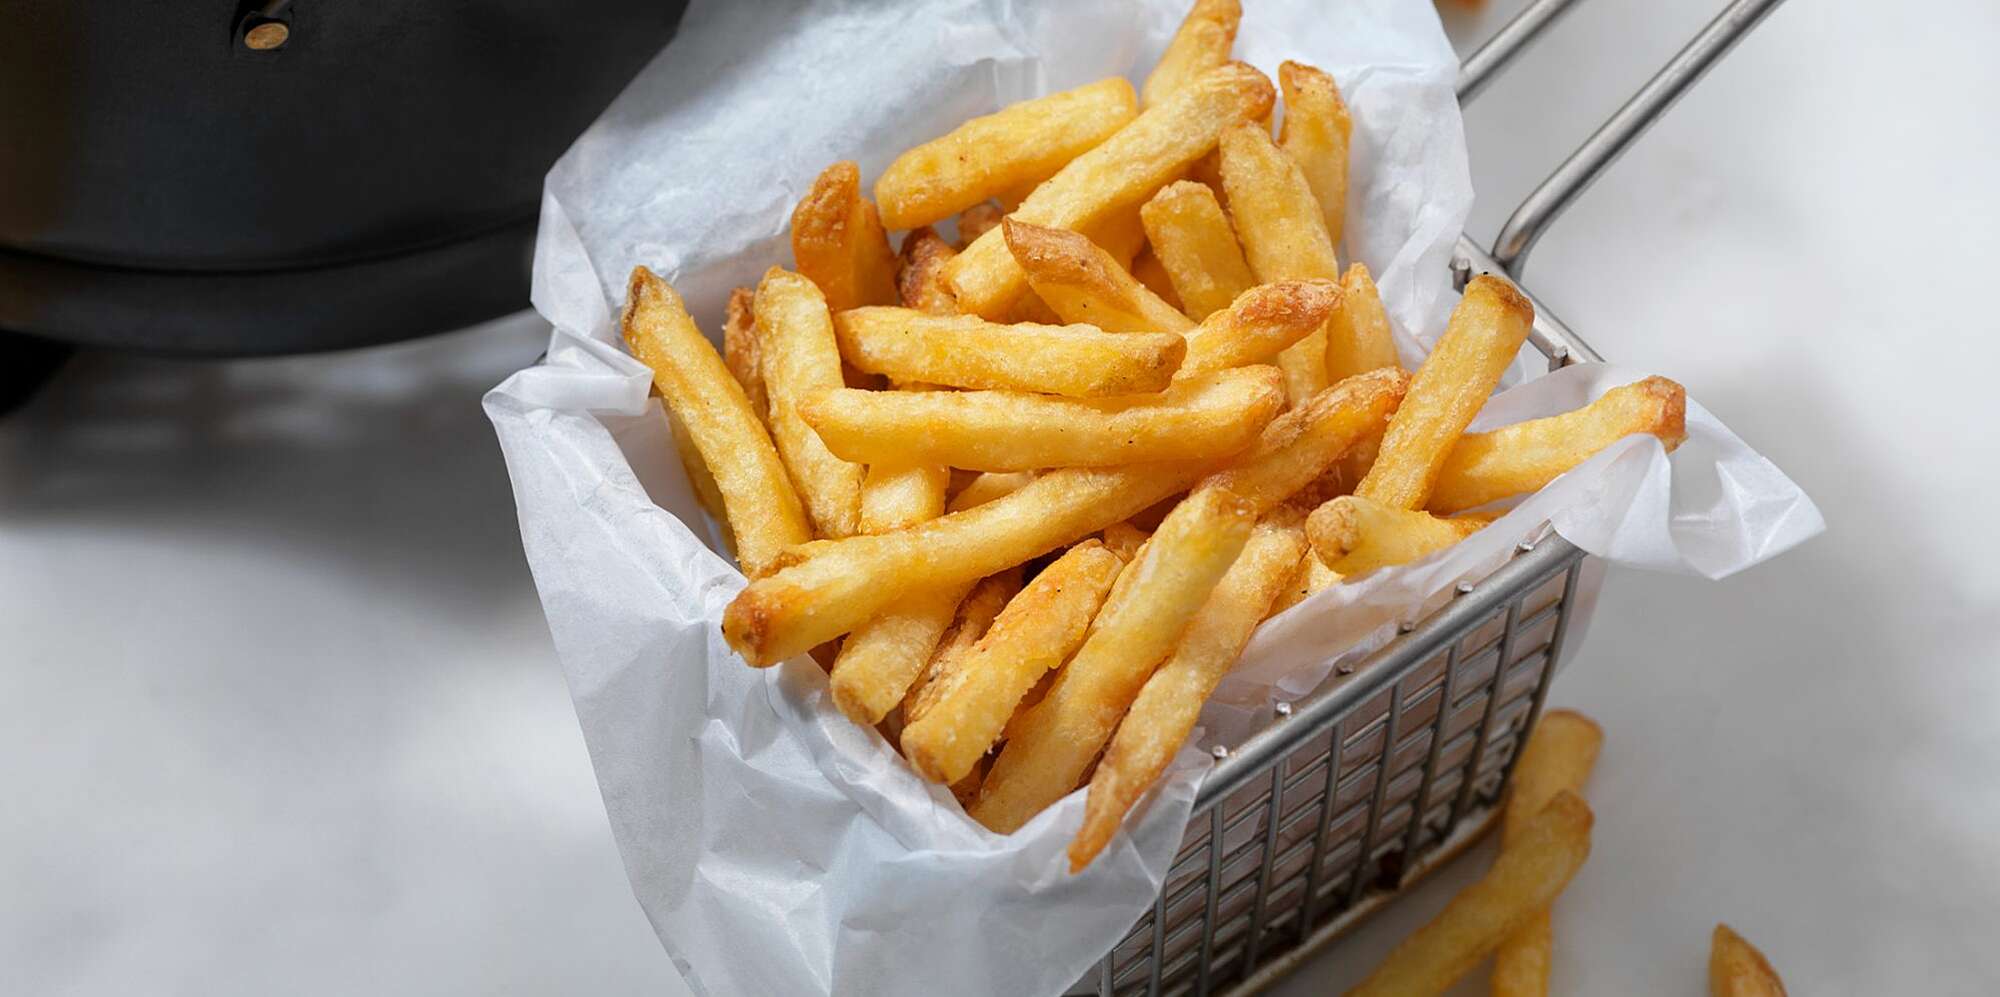 light French fries - frites très light avec le Ninja Foodi Max 